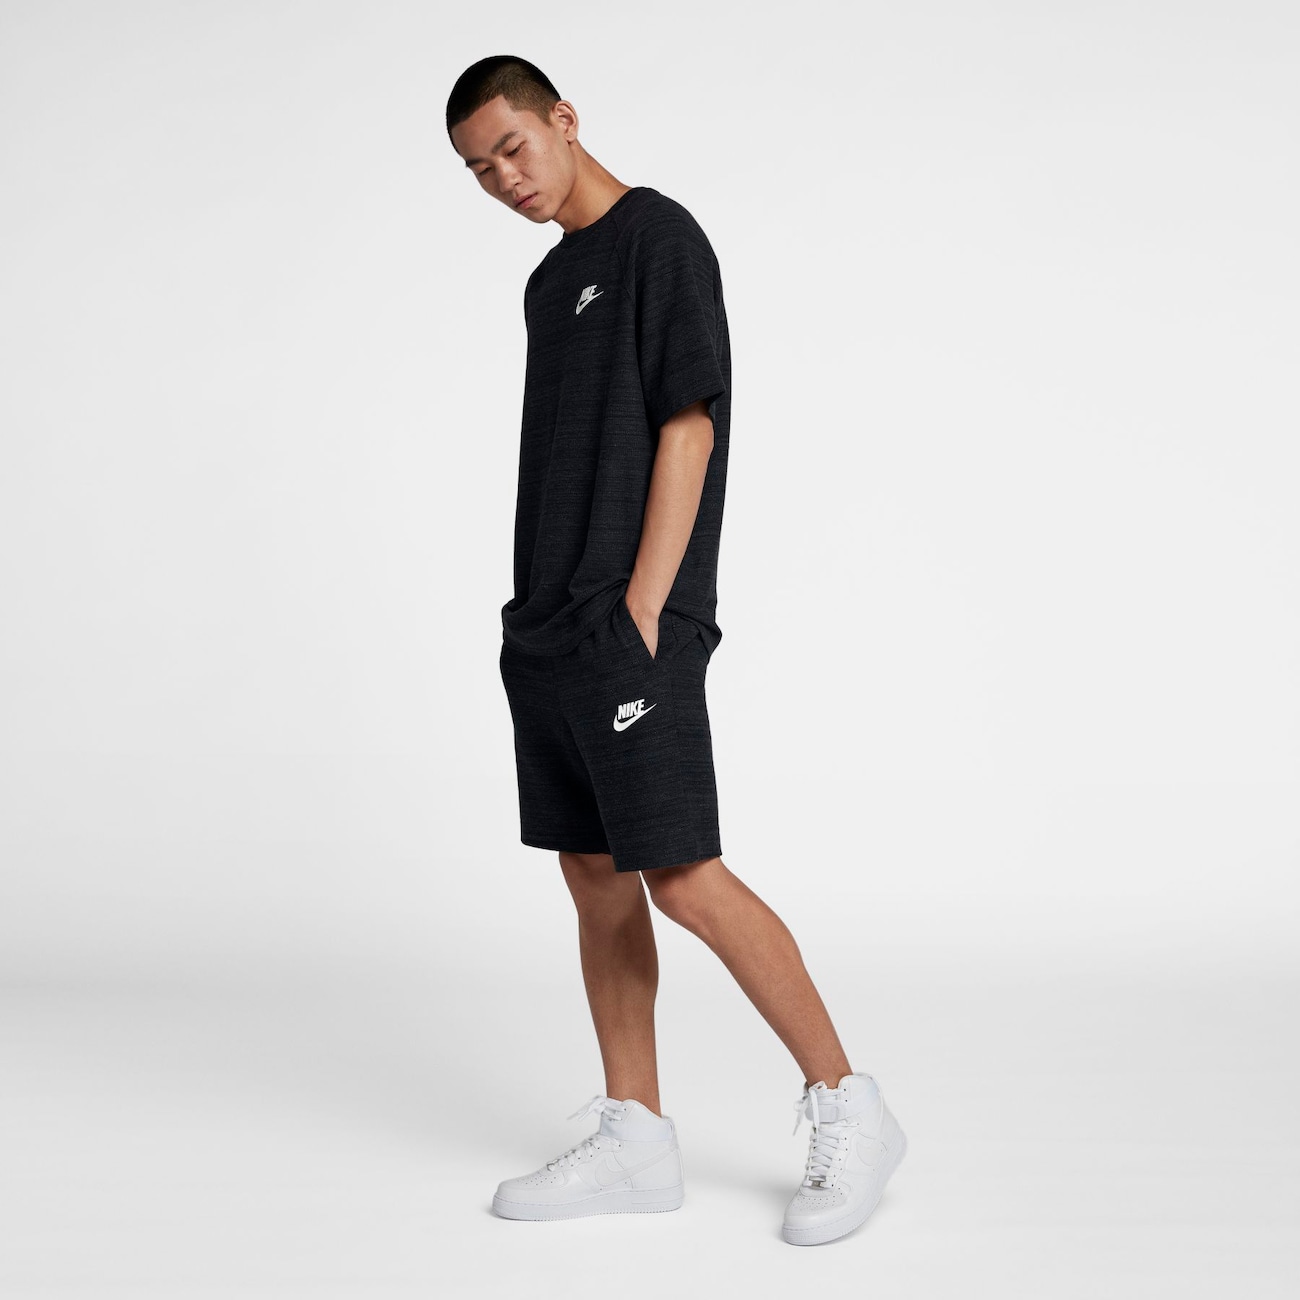 Shorts Nike Sportswear Advance 15 Masculino - Foto 4